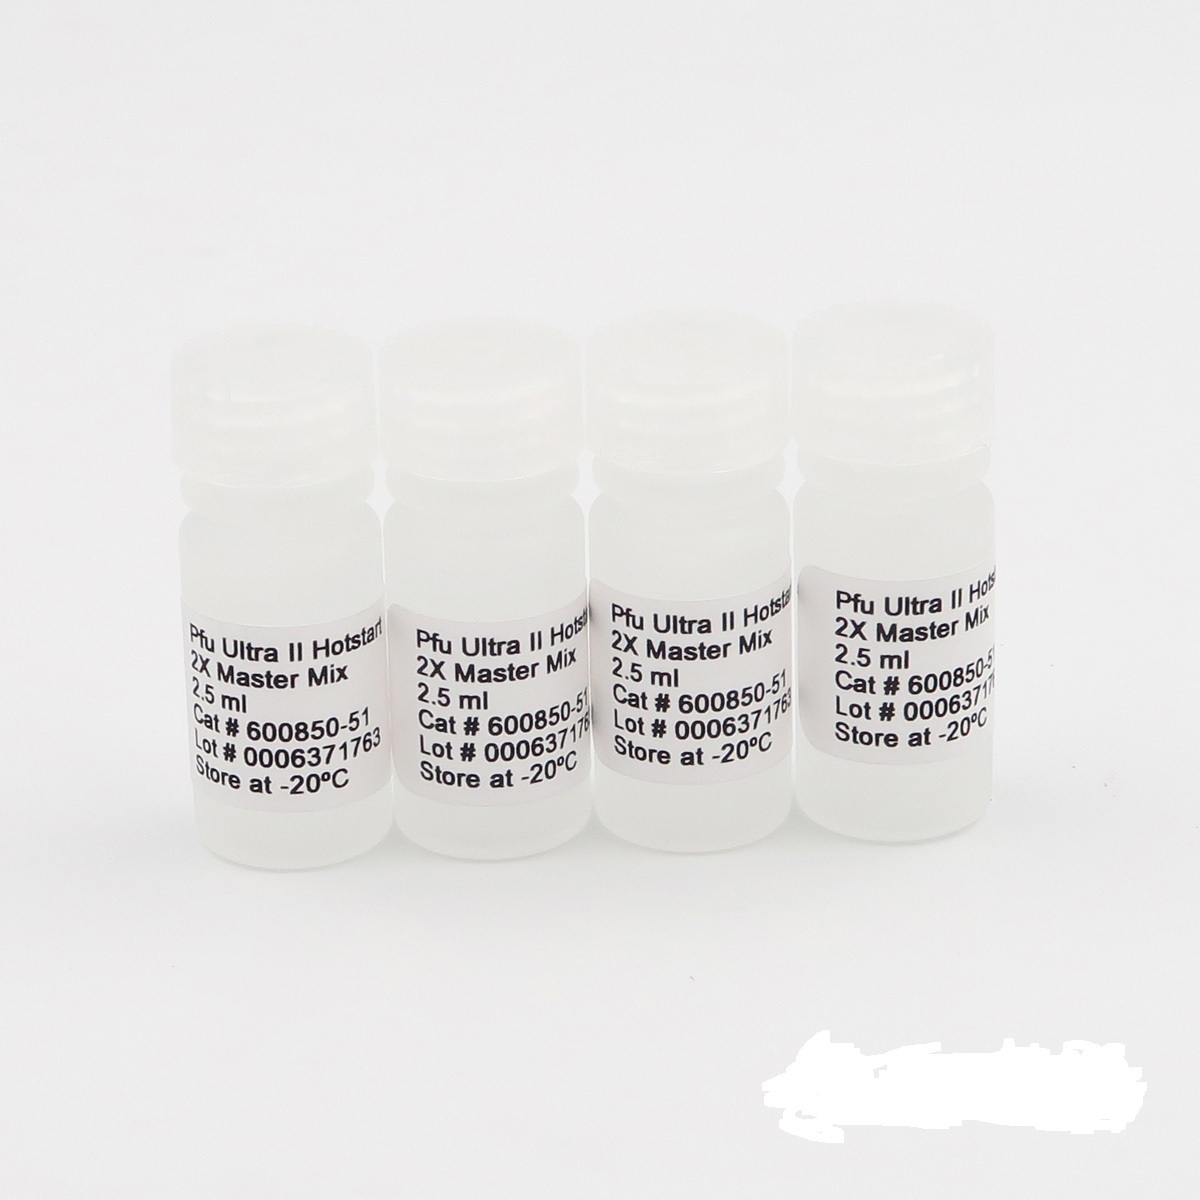 异源曼氏杆菌染料法荧光定量PCR试剂盒